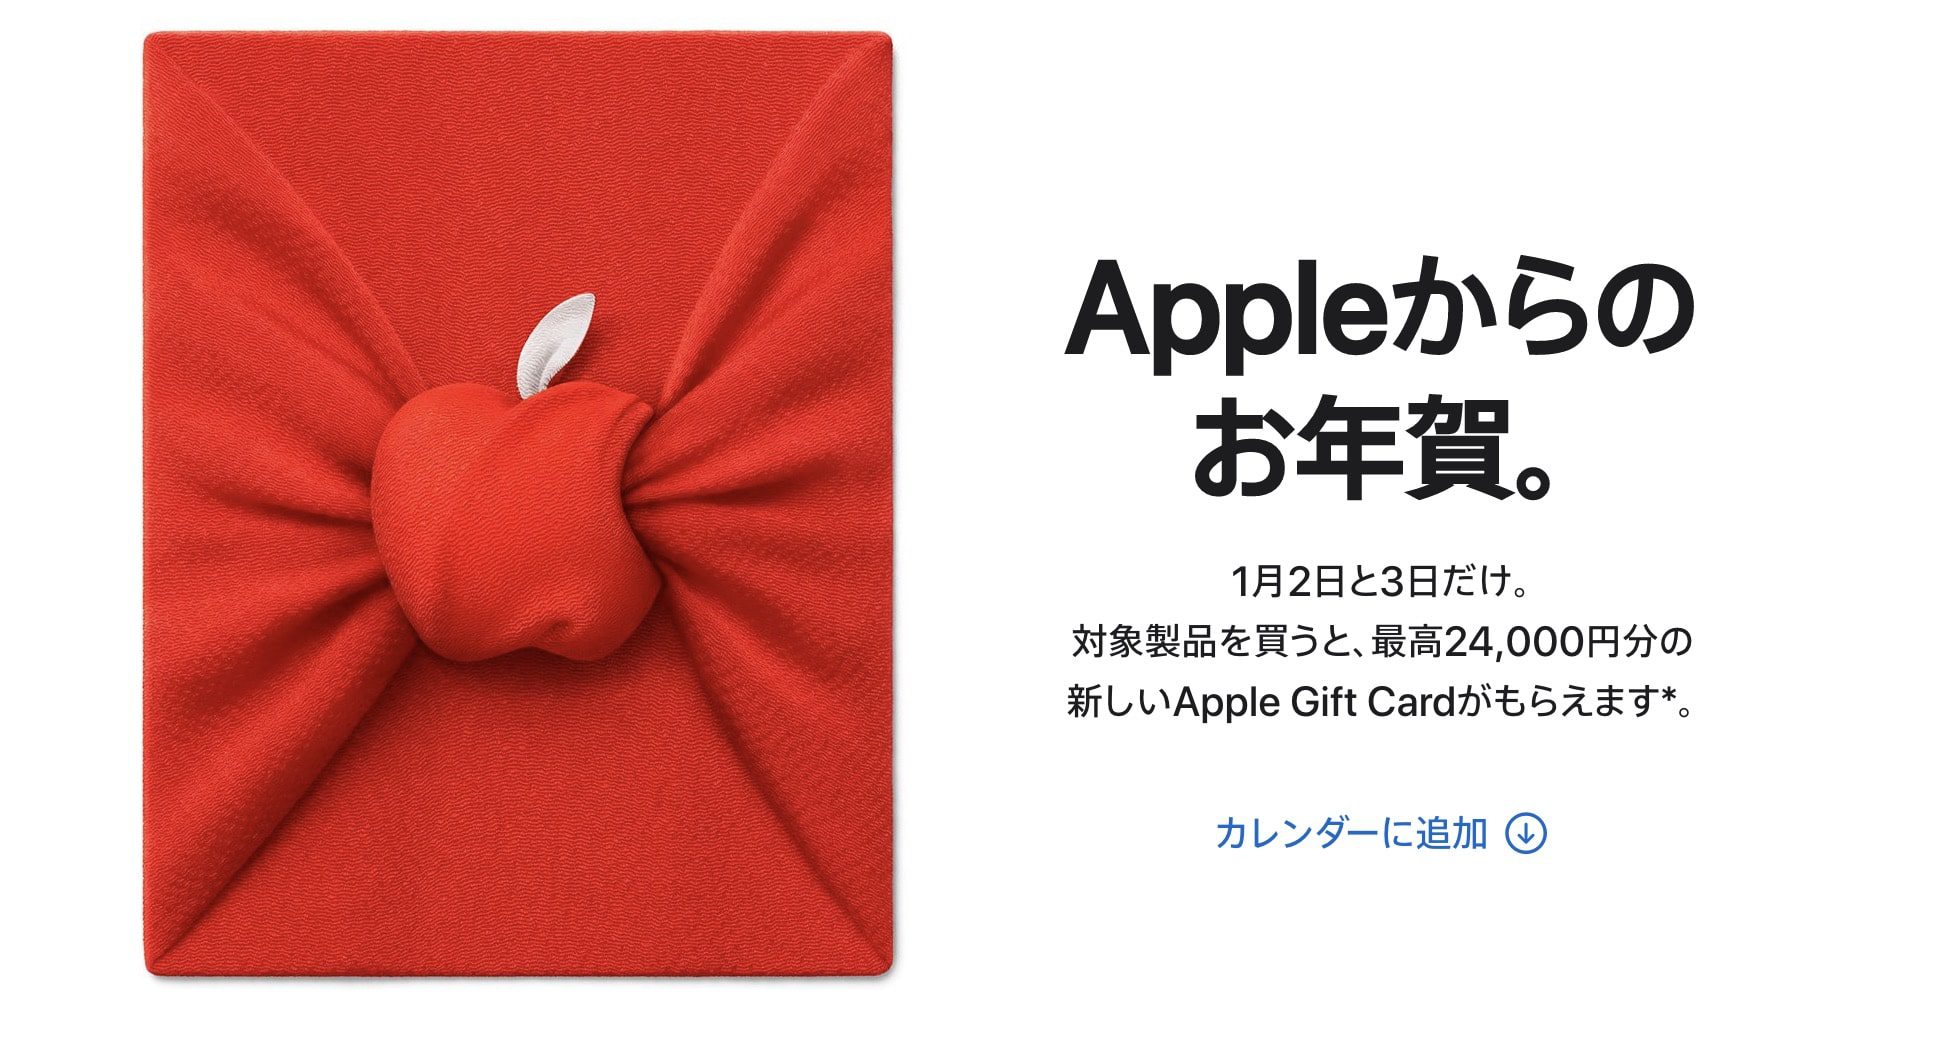 Apple Angebot einer Geschenkkarte, Limited Edition AirTag für die japanische Neujahrsaktion 45